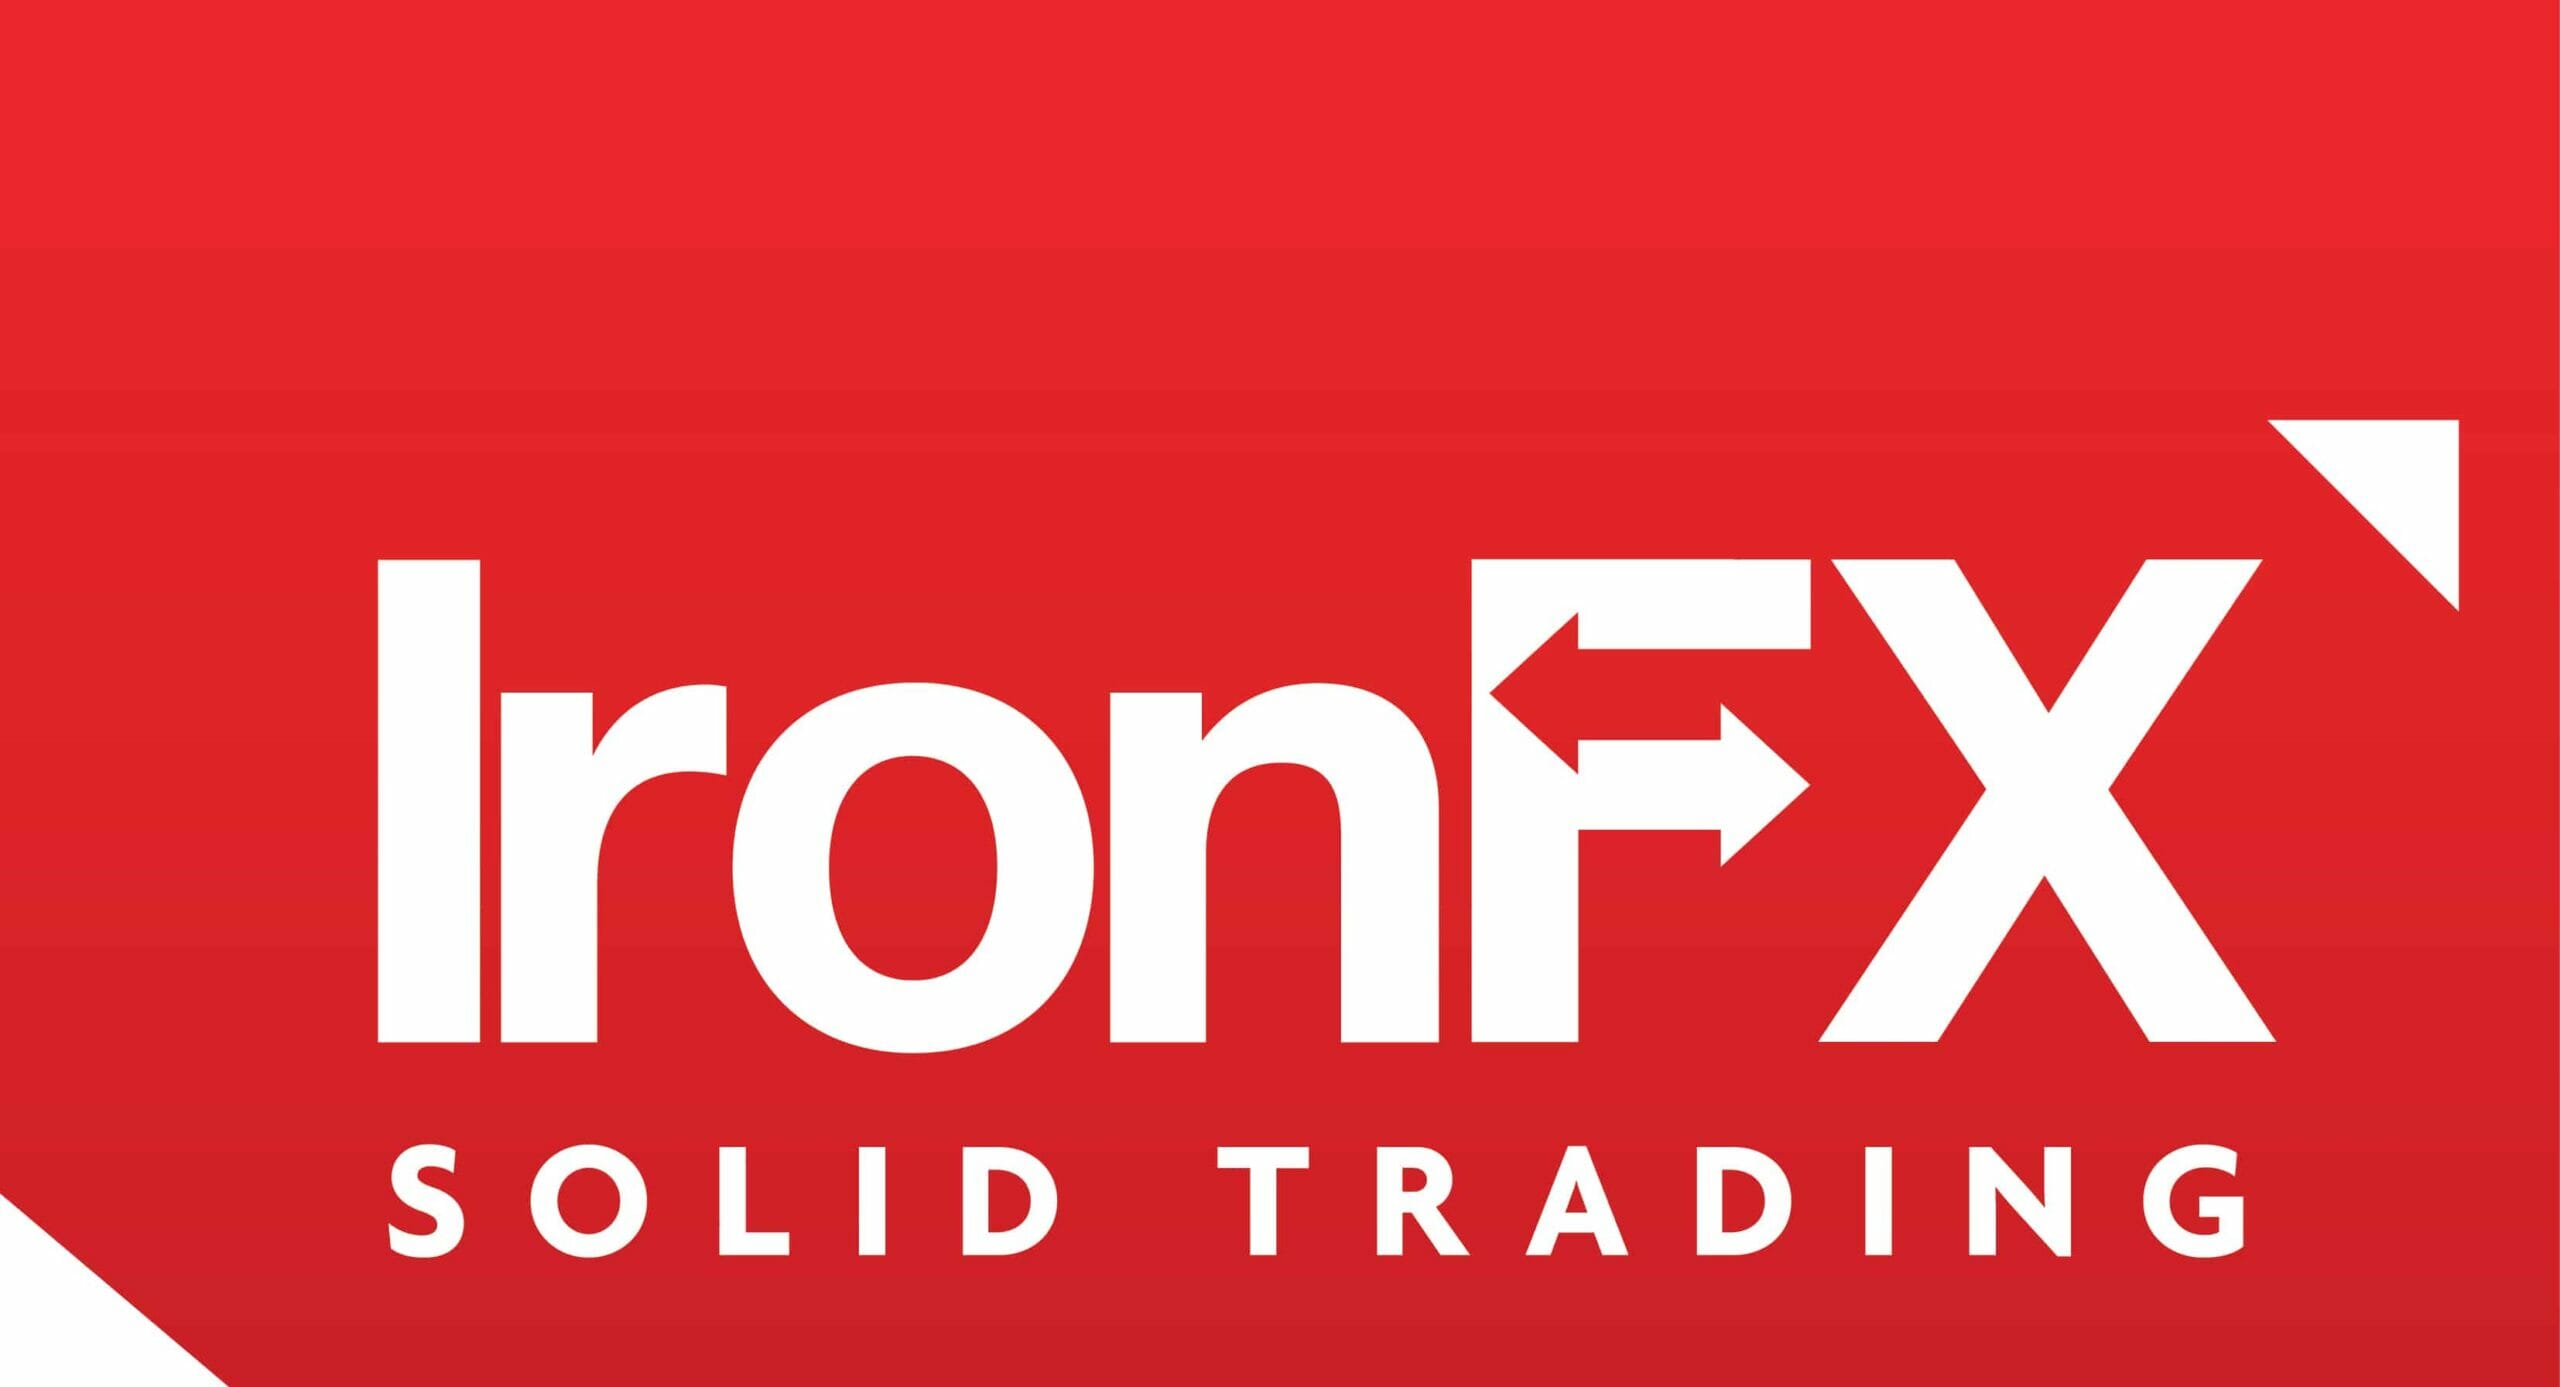 تقييم شركة IronFX للتداول: كل ما عليك معرفته عنها قبل إيداع أموالك